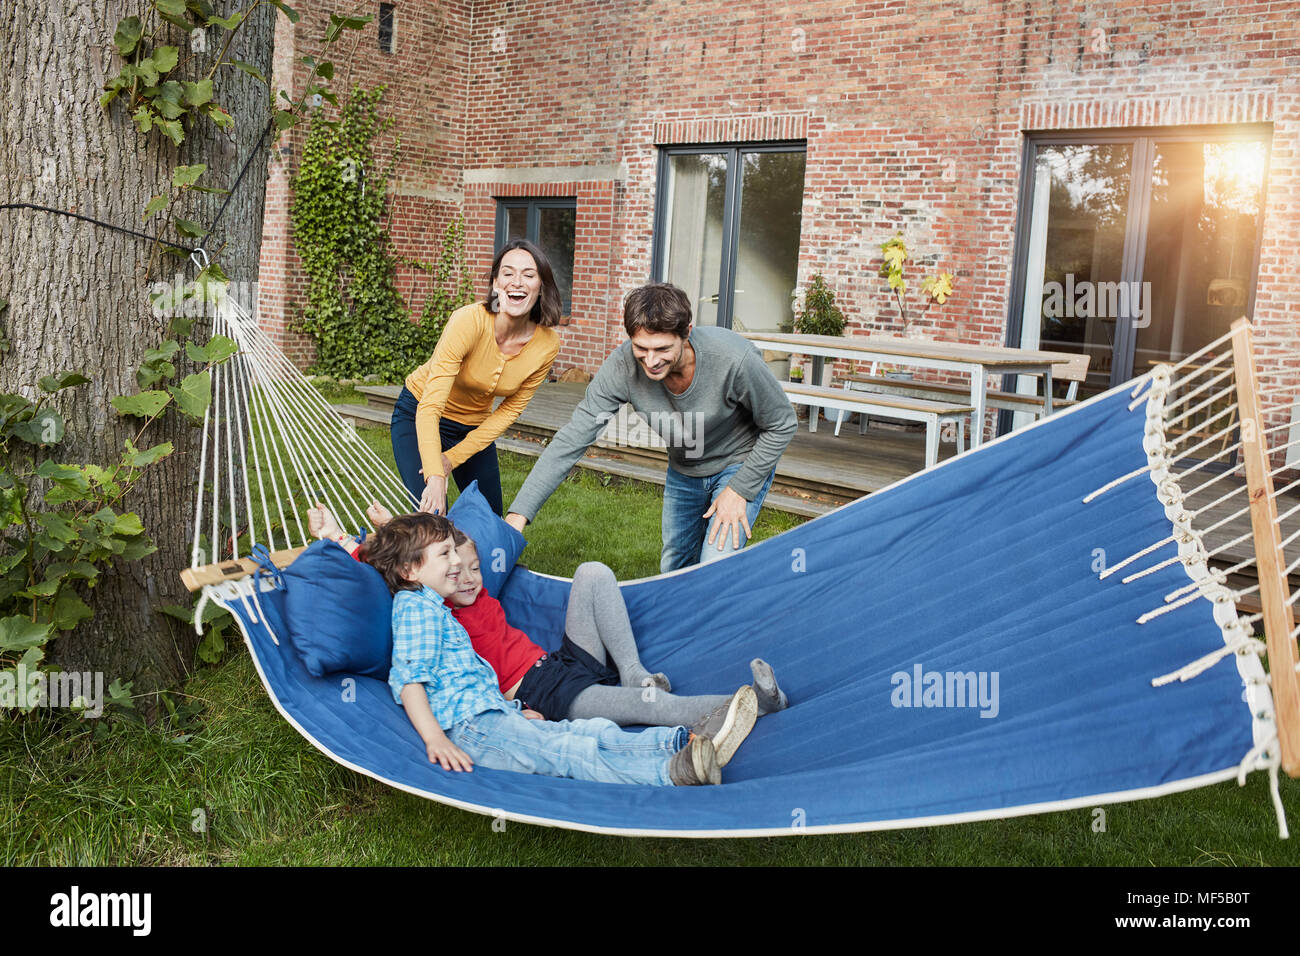 Happy Family playing in hammock dans jardin de leur maison Banque D'Images